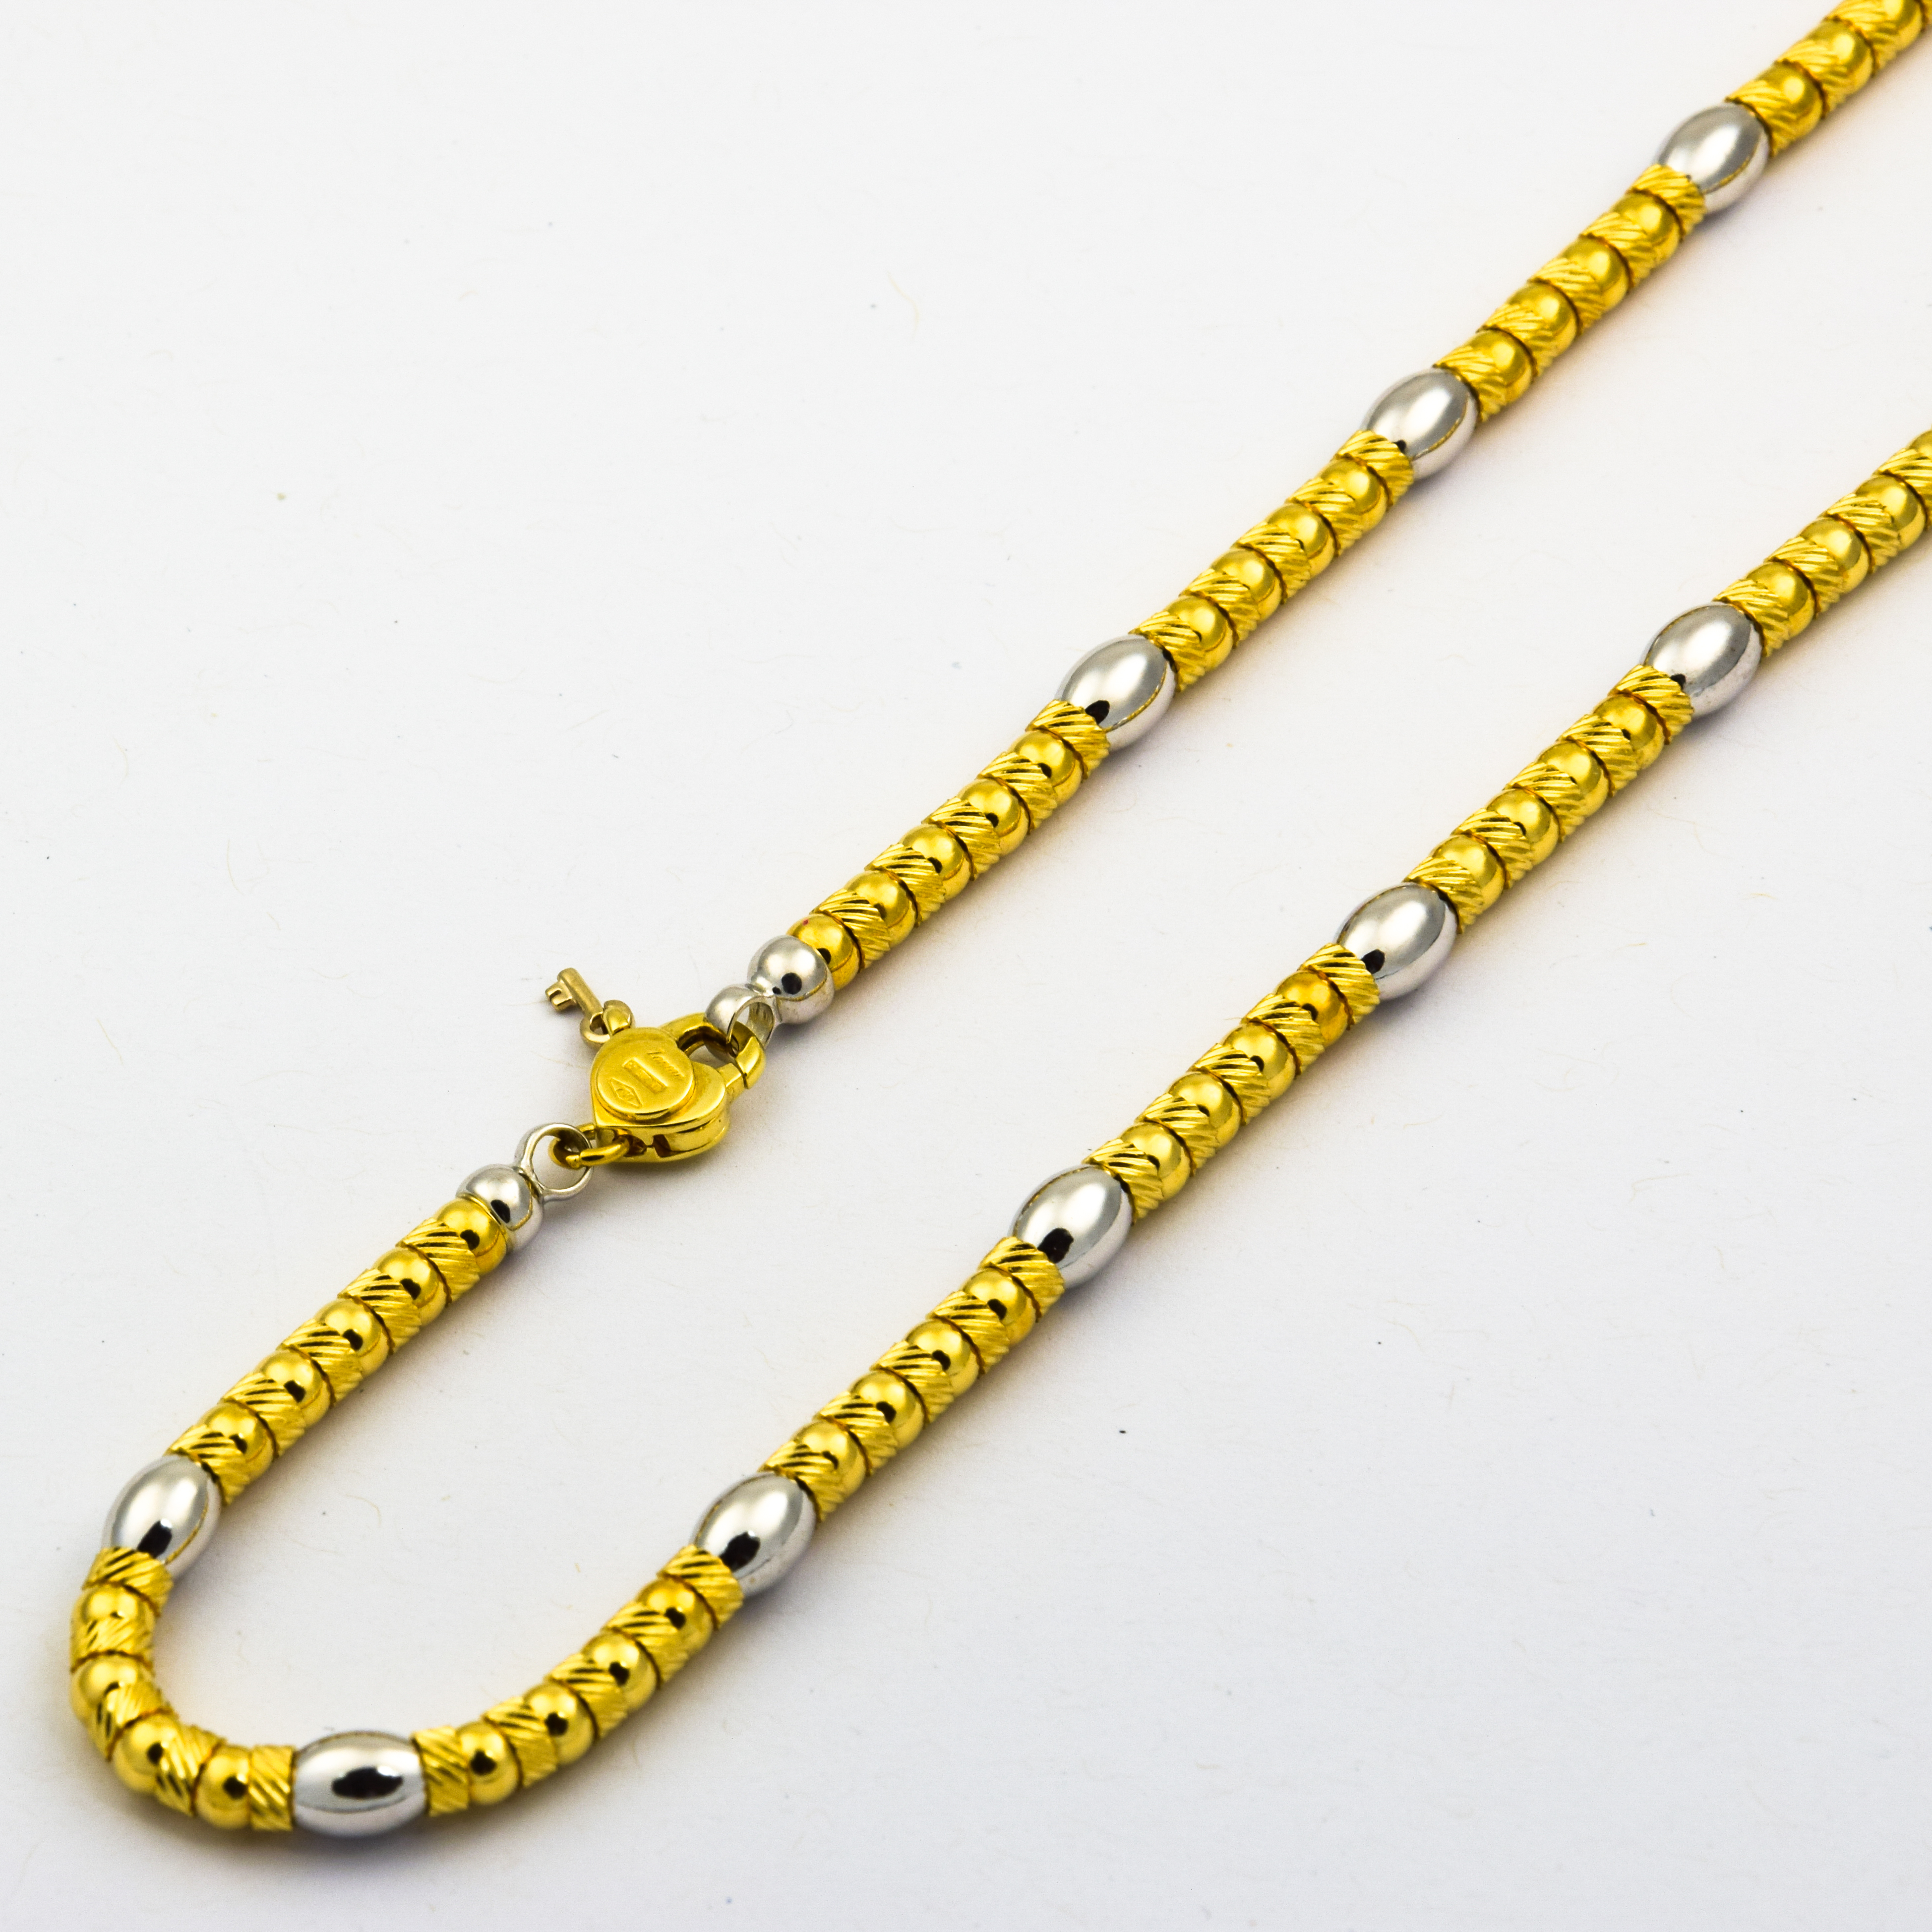 Zancan Phantasiekette aus 750 Gelb- und Weißgold, 42cm, nachhaltiger second hand Schmuck perfekt aufgearbeitet